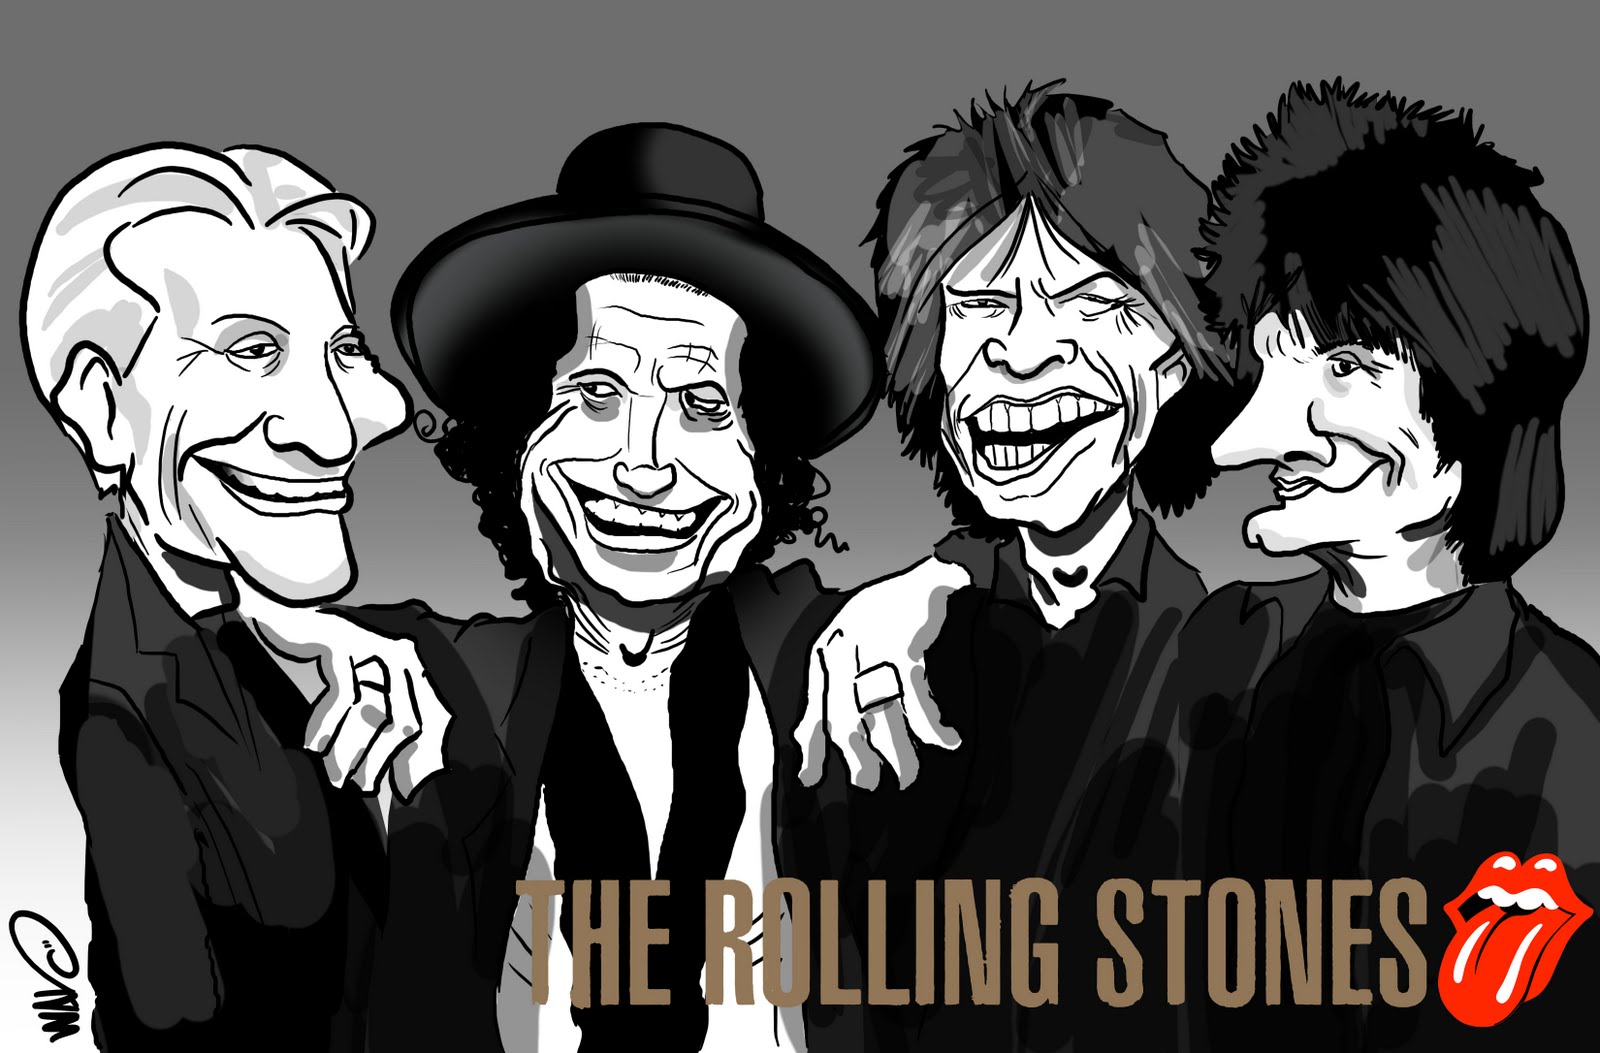 Rolling stones song stoned. Карикатуры на Роллинг стоунз. Шаржи Битлз Роллинг стоунз. Карикатуры на рок группы. Rolling Stones шарж.